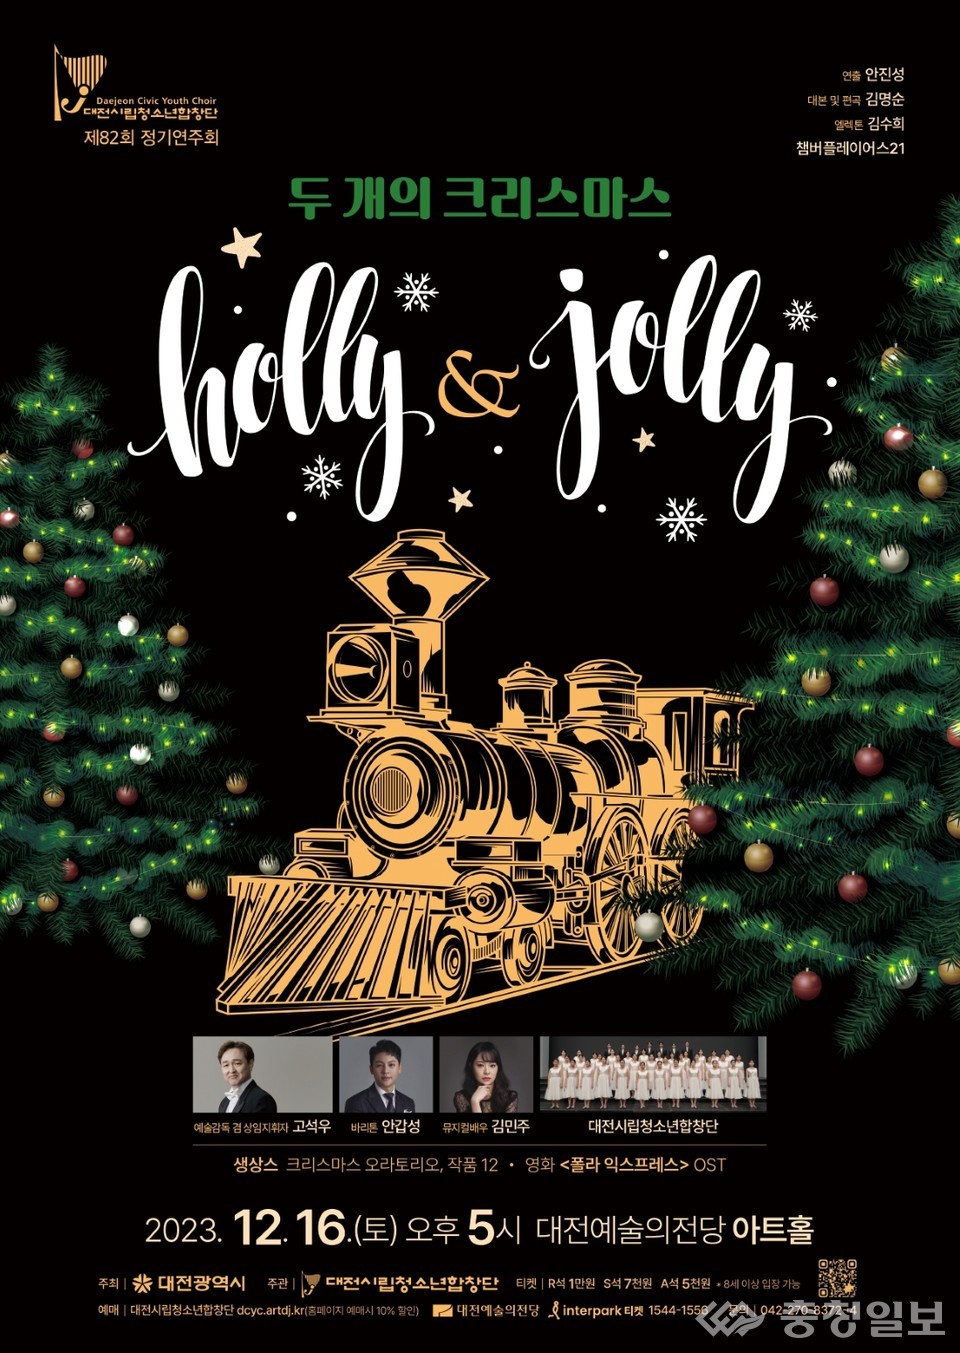 ▲ 대전시립청소년합창단 두 개의 크리스마스 Holly & Jolly 포스터